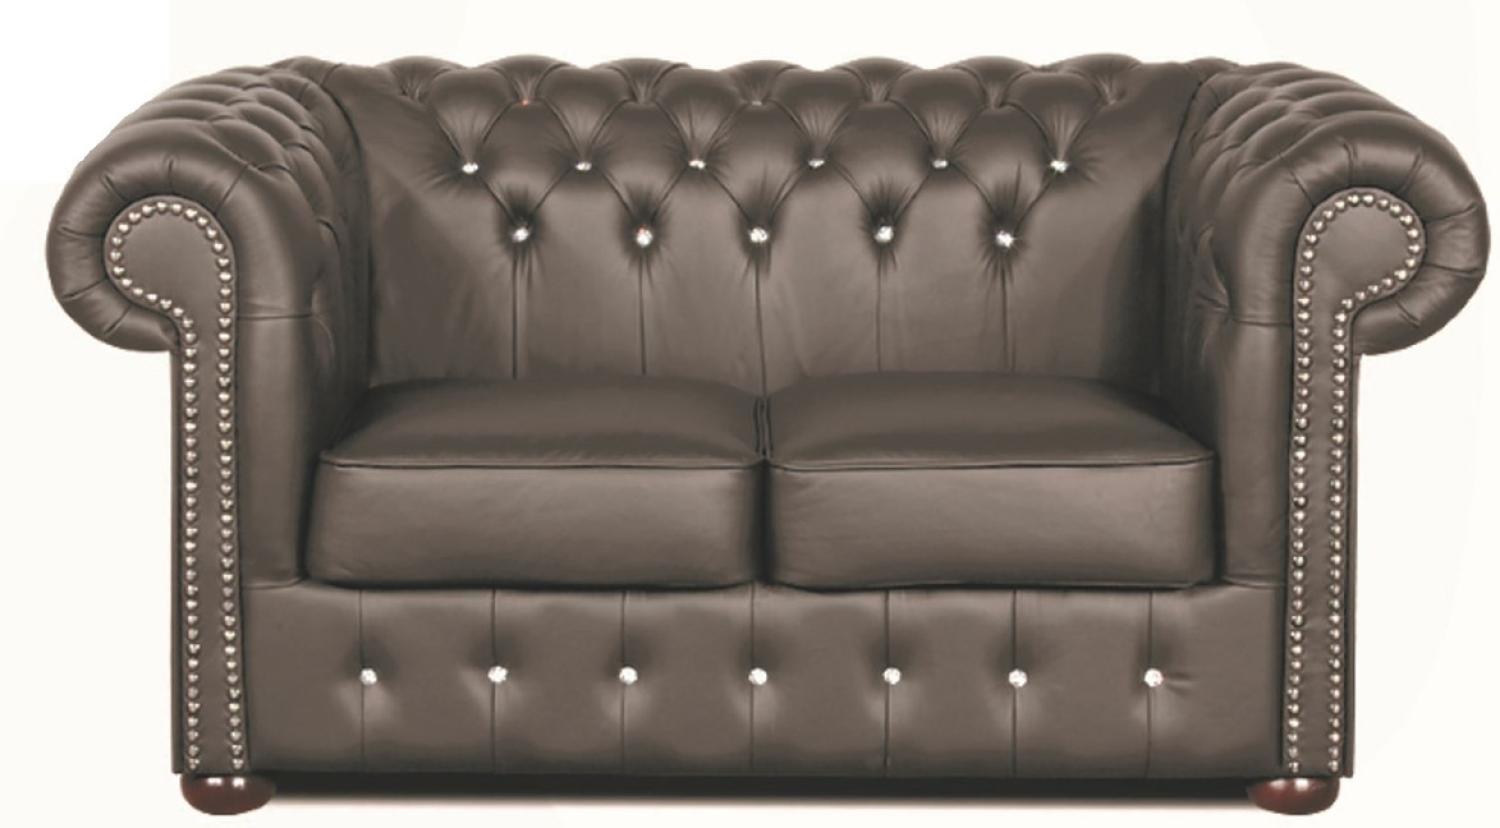 Casa Padrino Chesterfield Echtleder 2er Sofa in dunkelgrau mit Swarovski Kristallsteinen 160 x 90 x H. 78 cm - Luxus Kollektion Bild 1